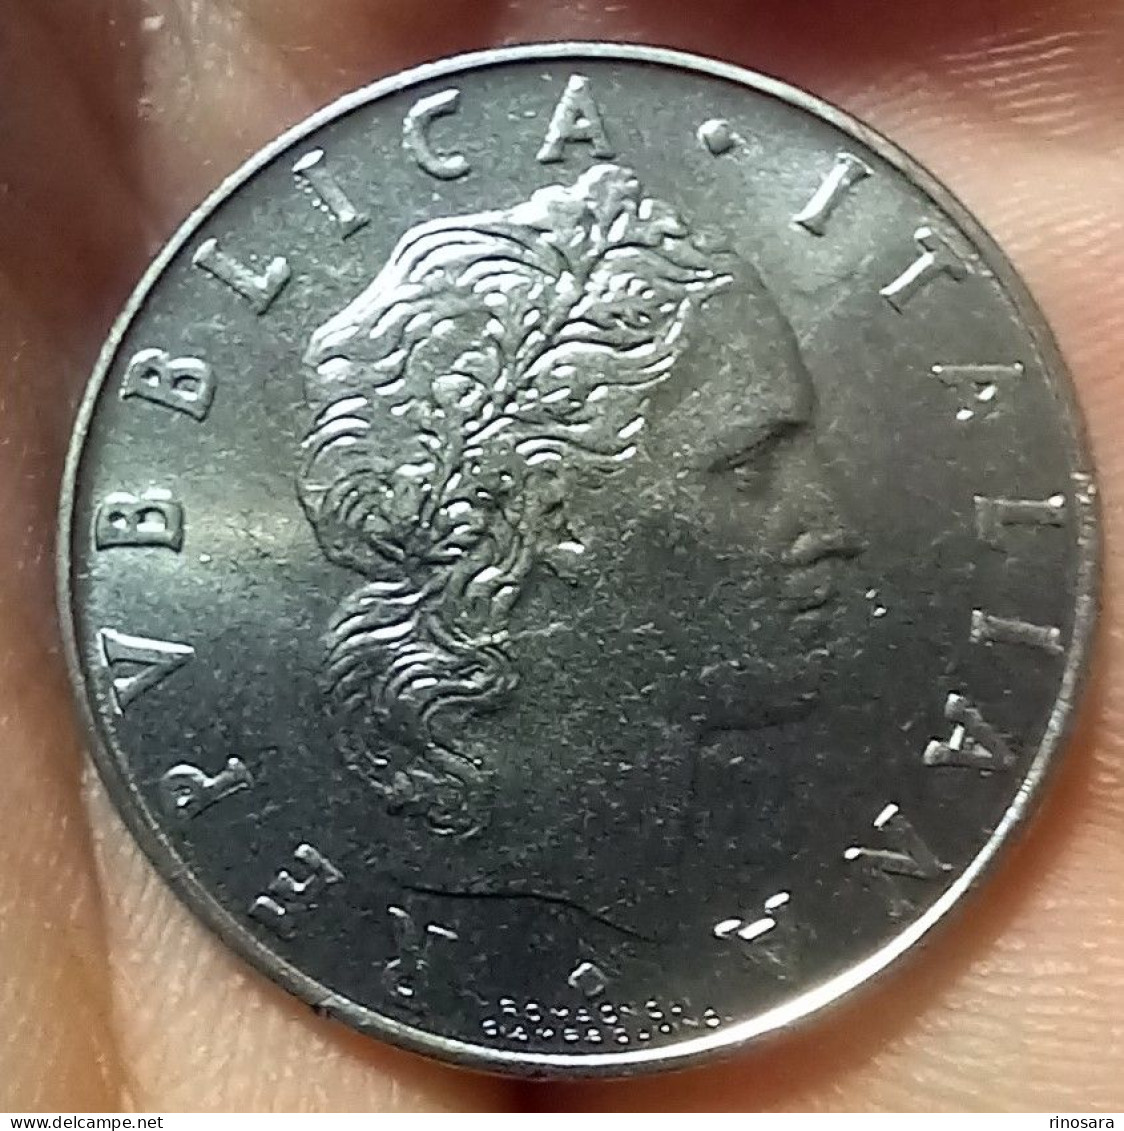 errore di conio 50 lire 1974 repubblica italiana